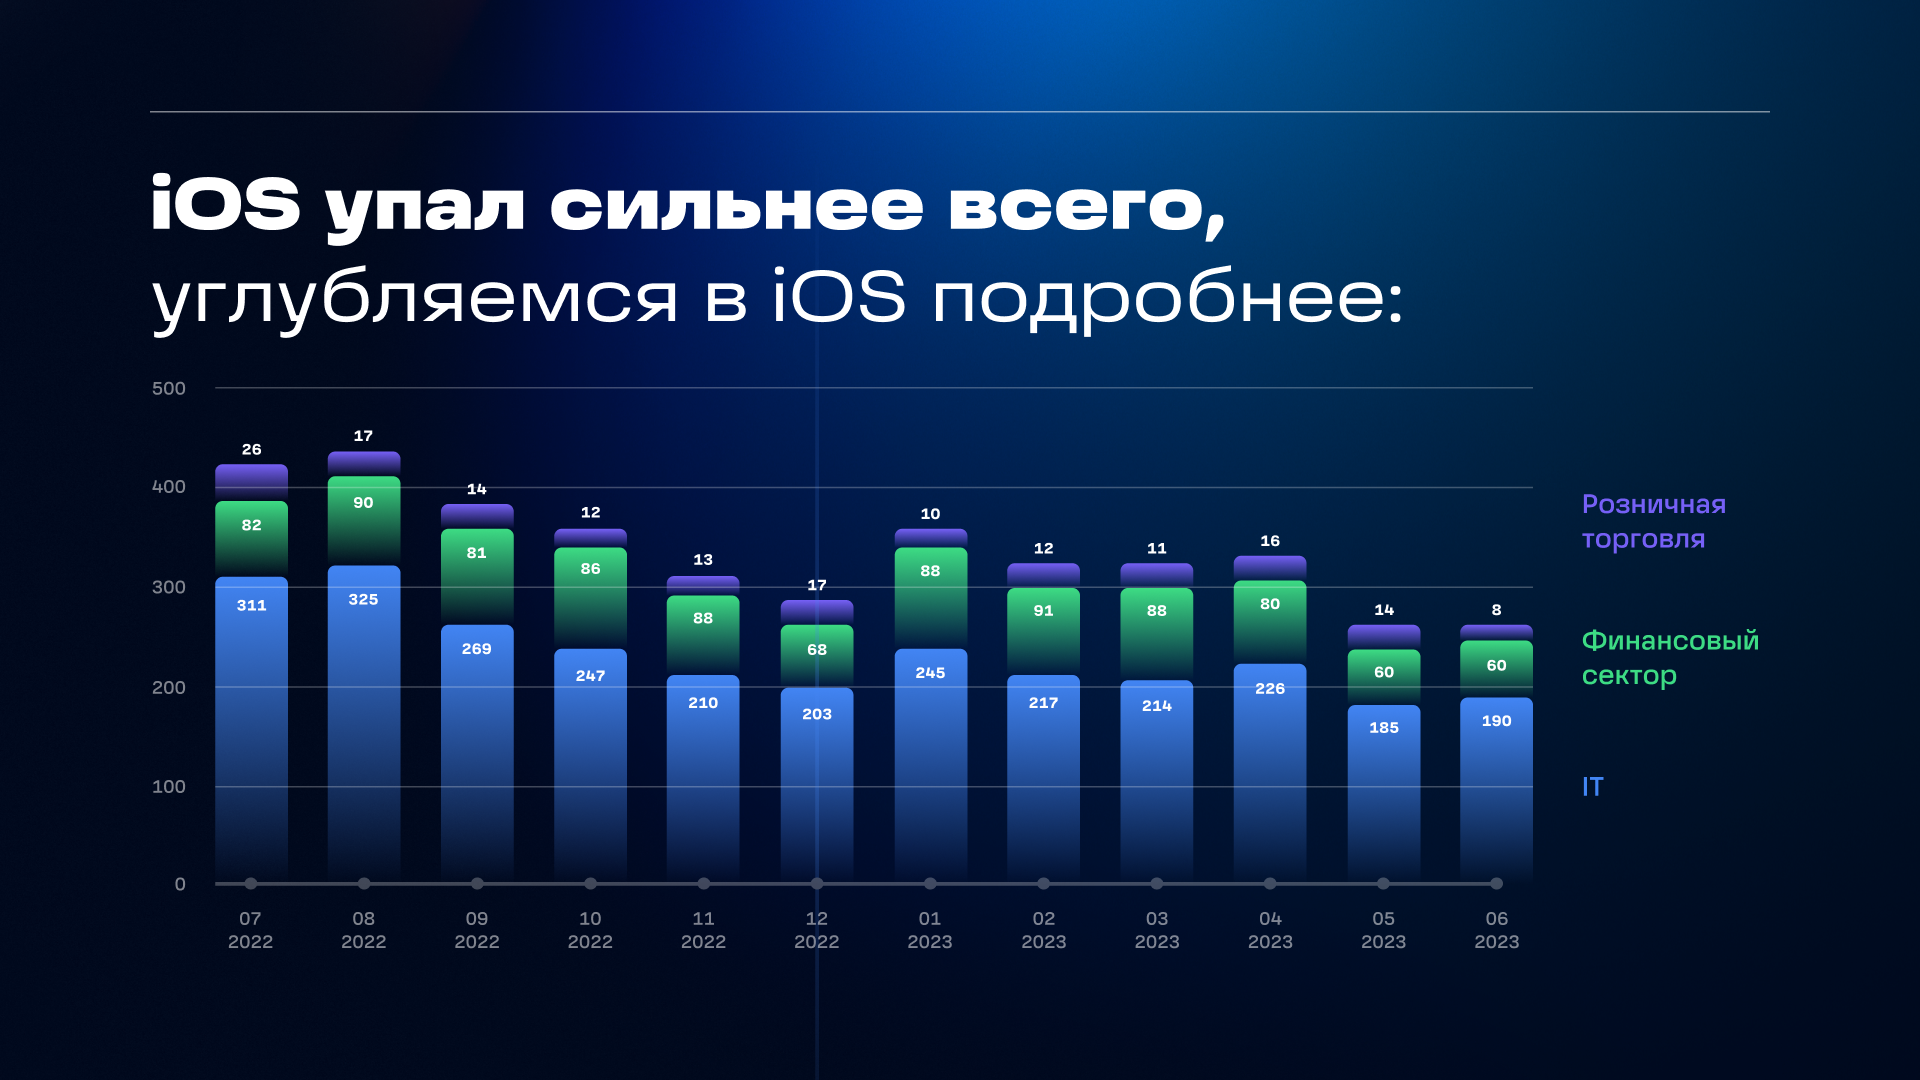 Динамика изменения числа вакансий для iOS-разработчиков в разрезе трех лидирующих сфер бизнеса. Данные: «Технократия»